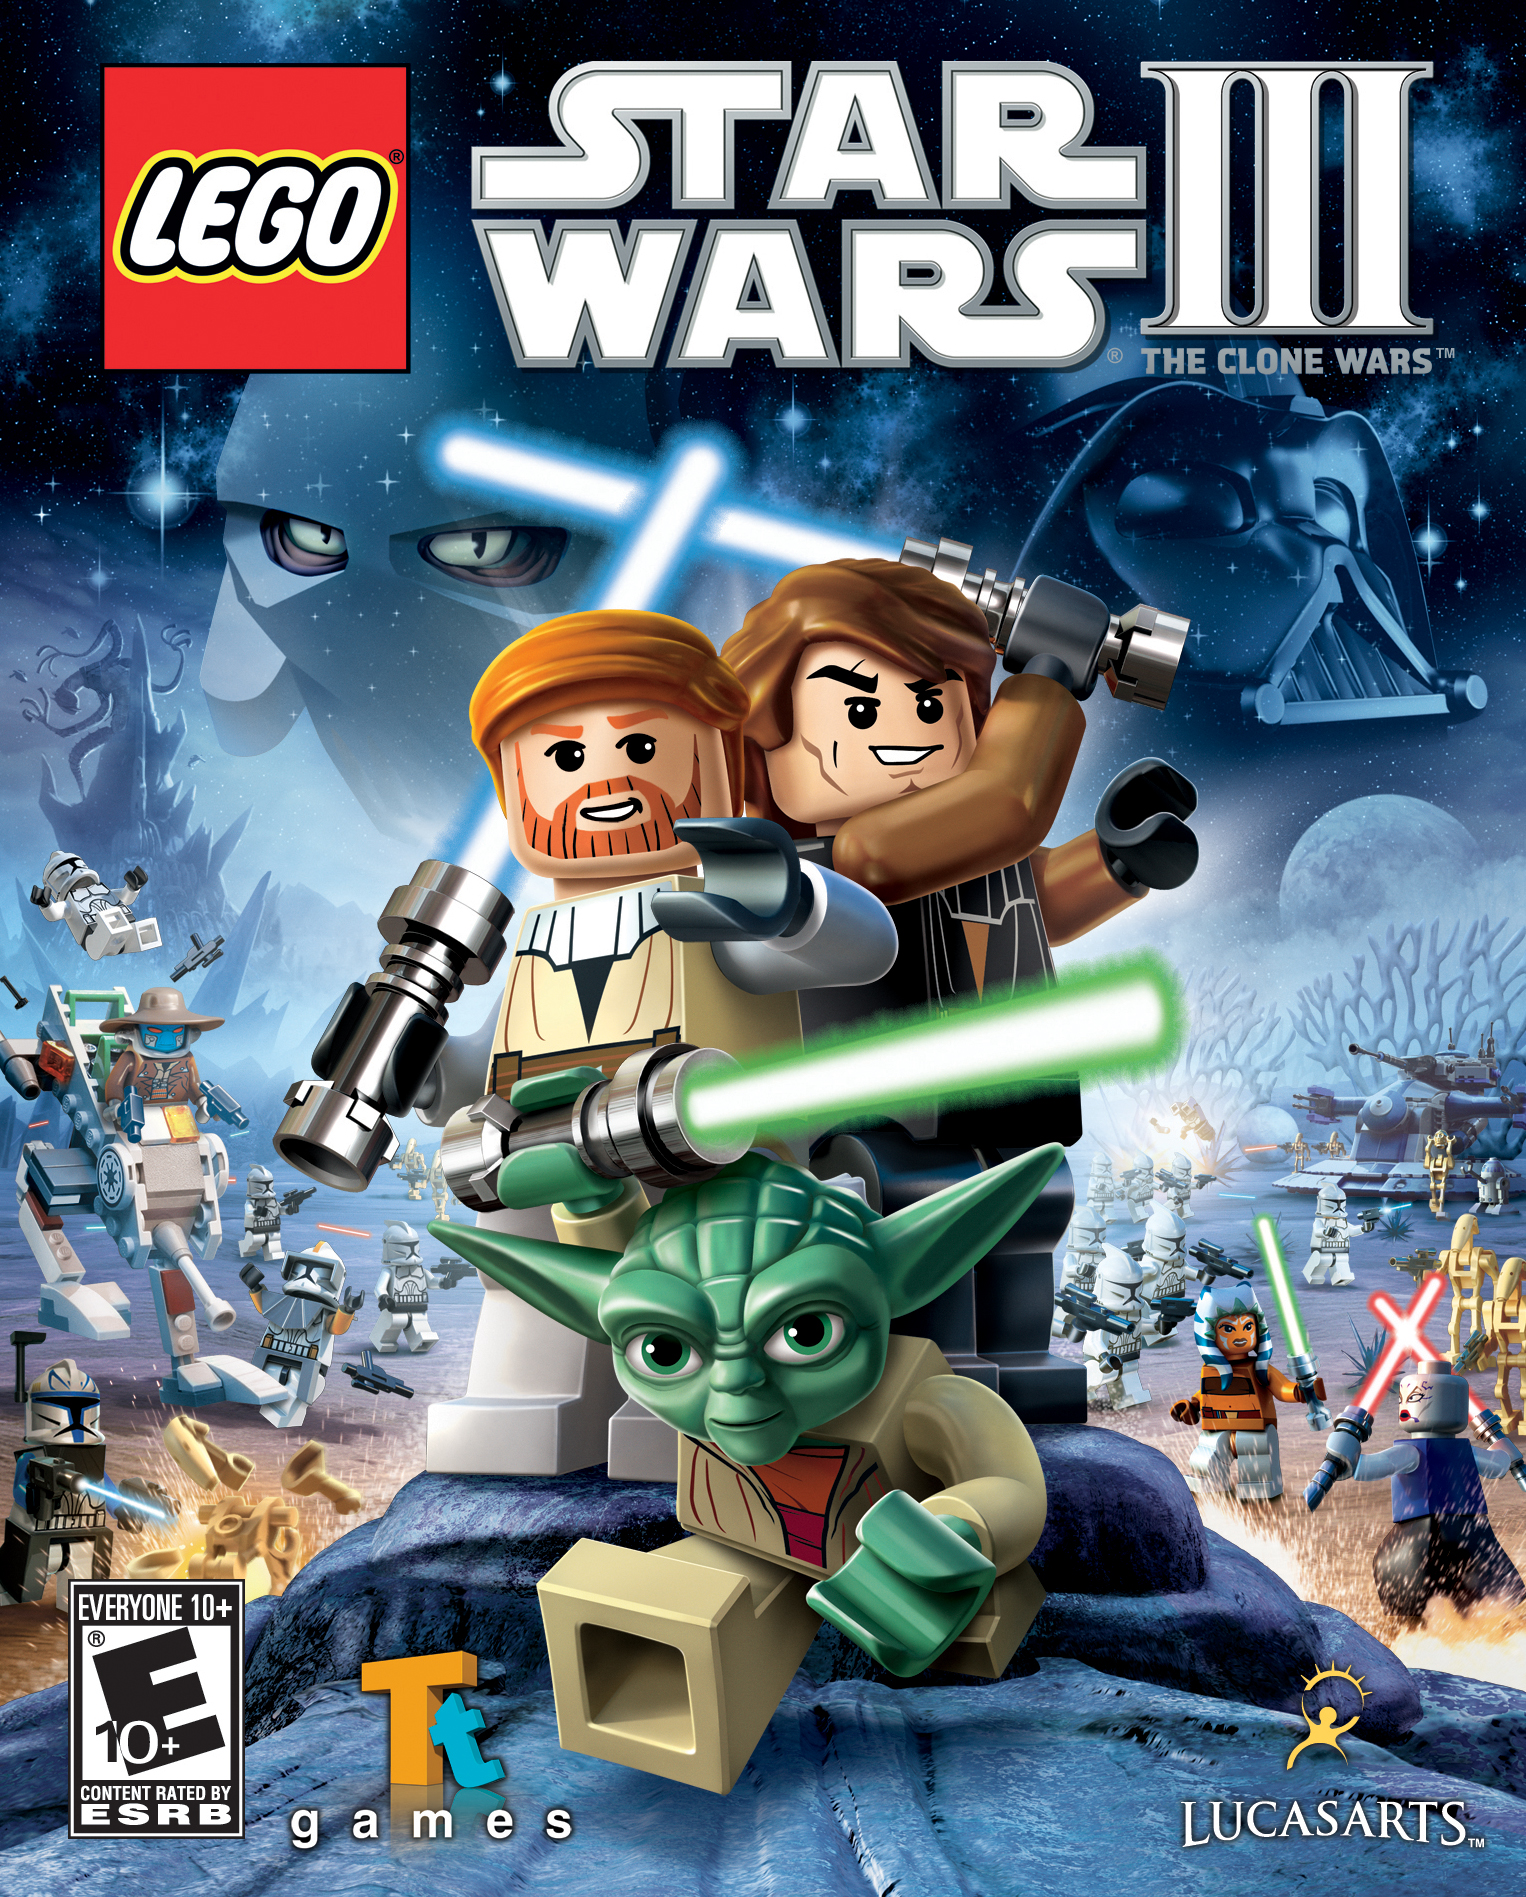 lego star wars 3 freeplay